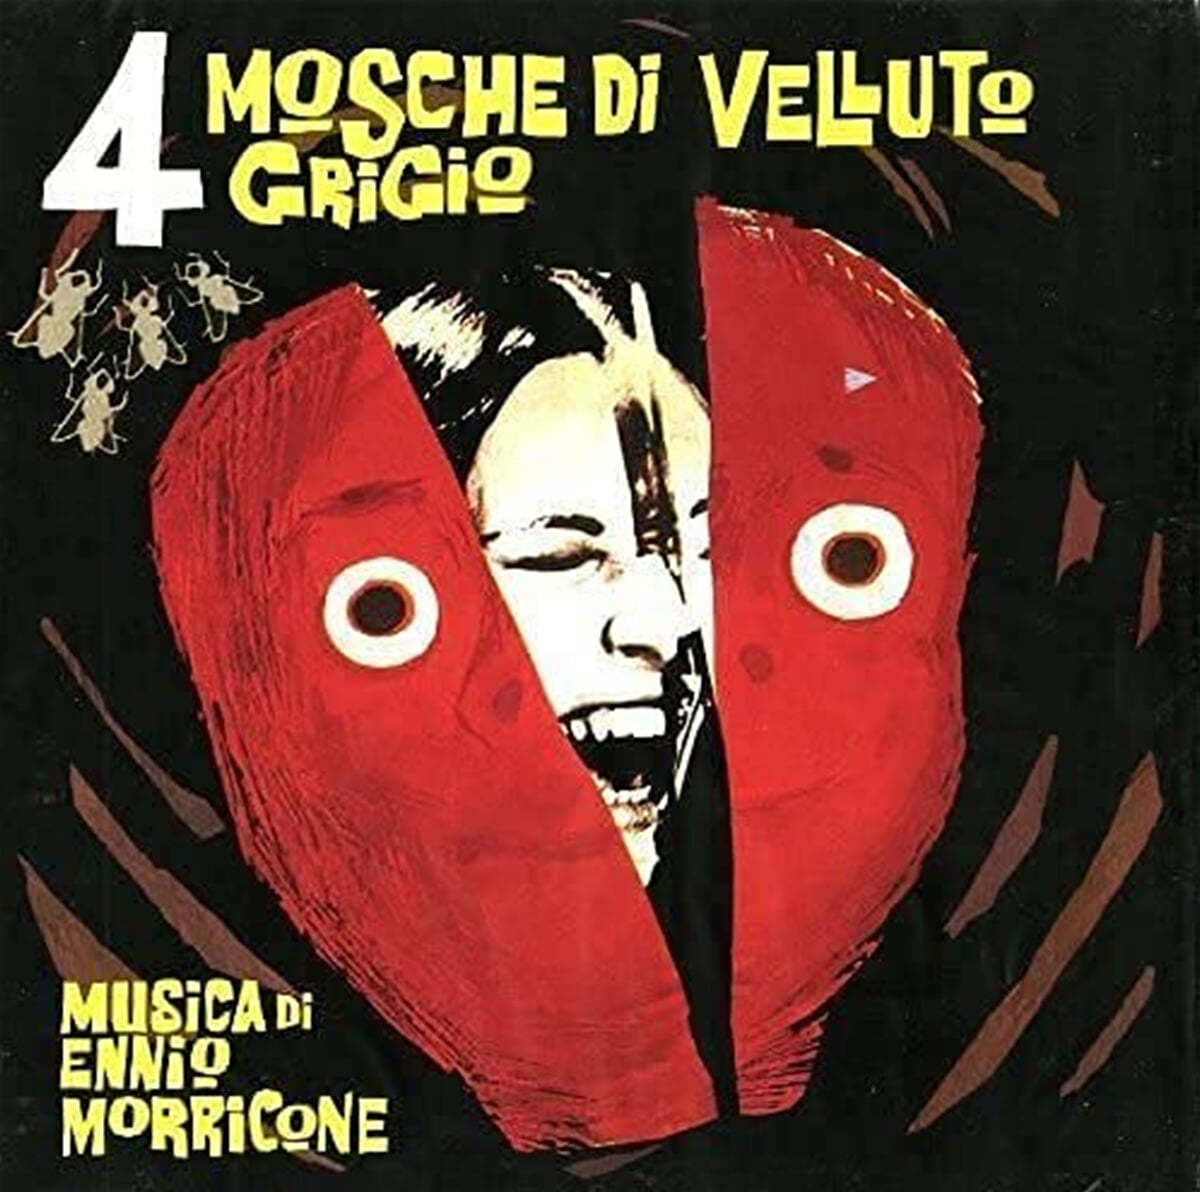 포 플라이스 온 그레이 벨벳 영화음악 (4 Mosche Di Velluto Grigio OST by Ennio Morricone) [화이트 컬러 LP]